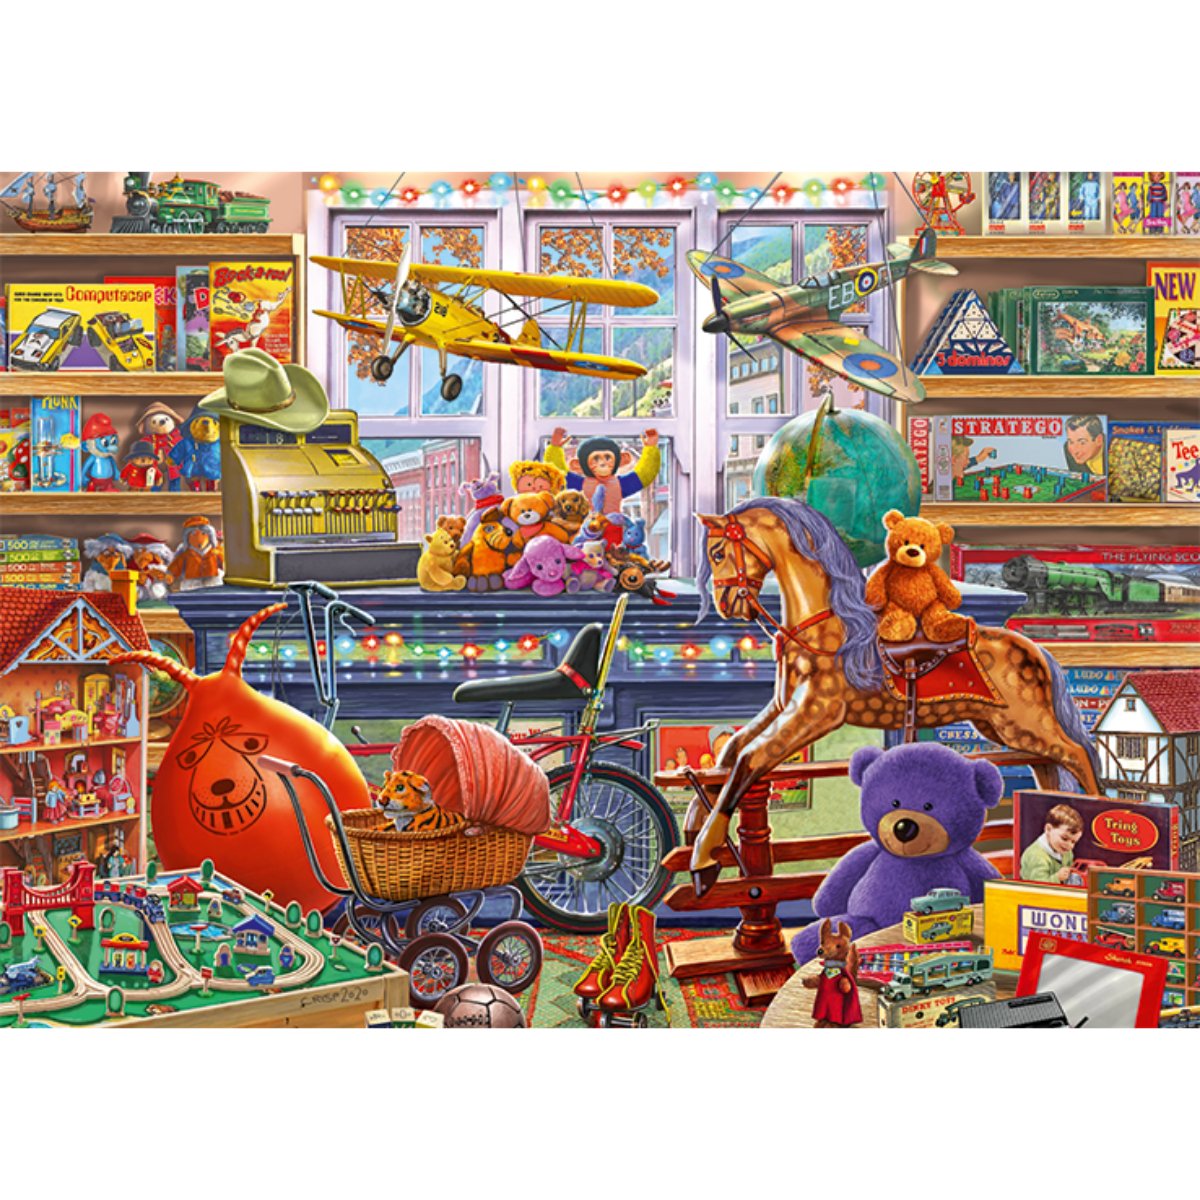 Falcon de Luxe Tony’s Top Shoppe 1000 Piece Puzzle - Phillips Hobbies